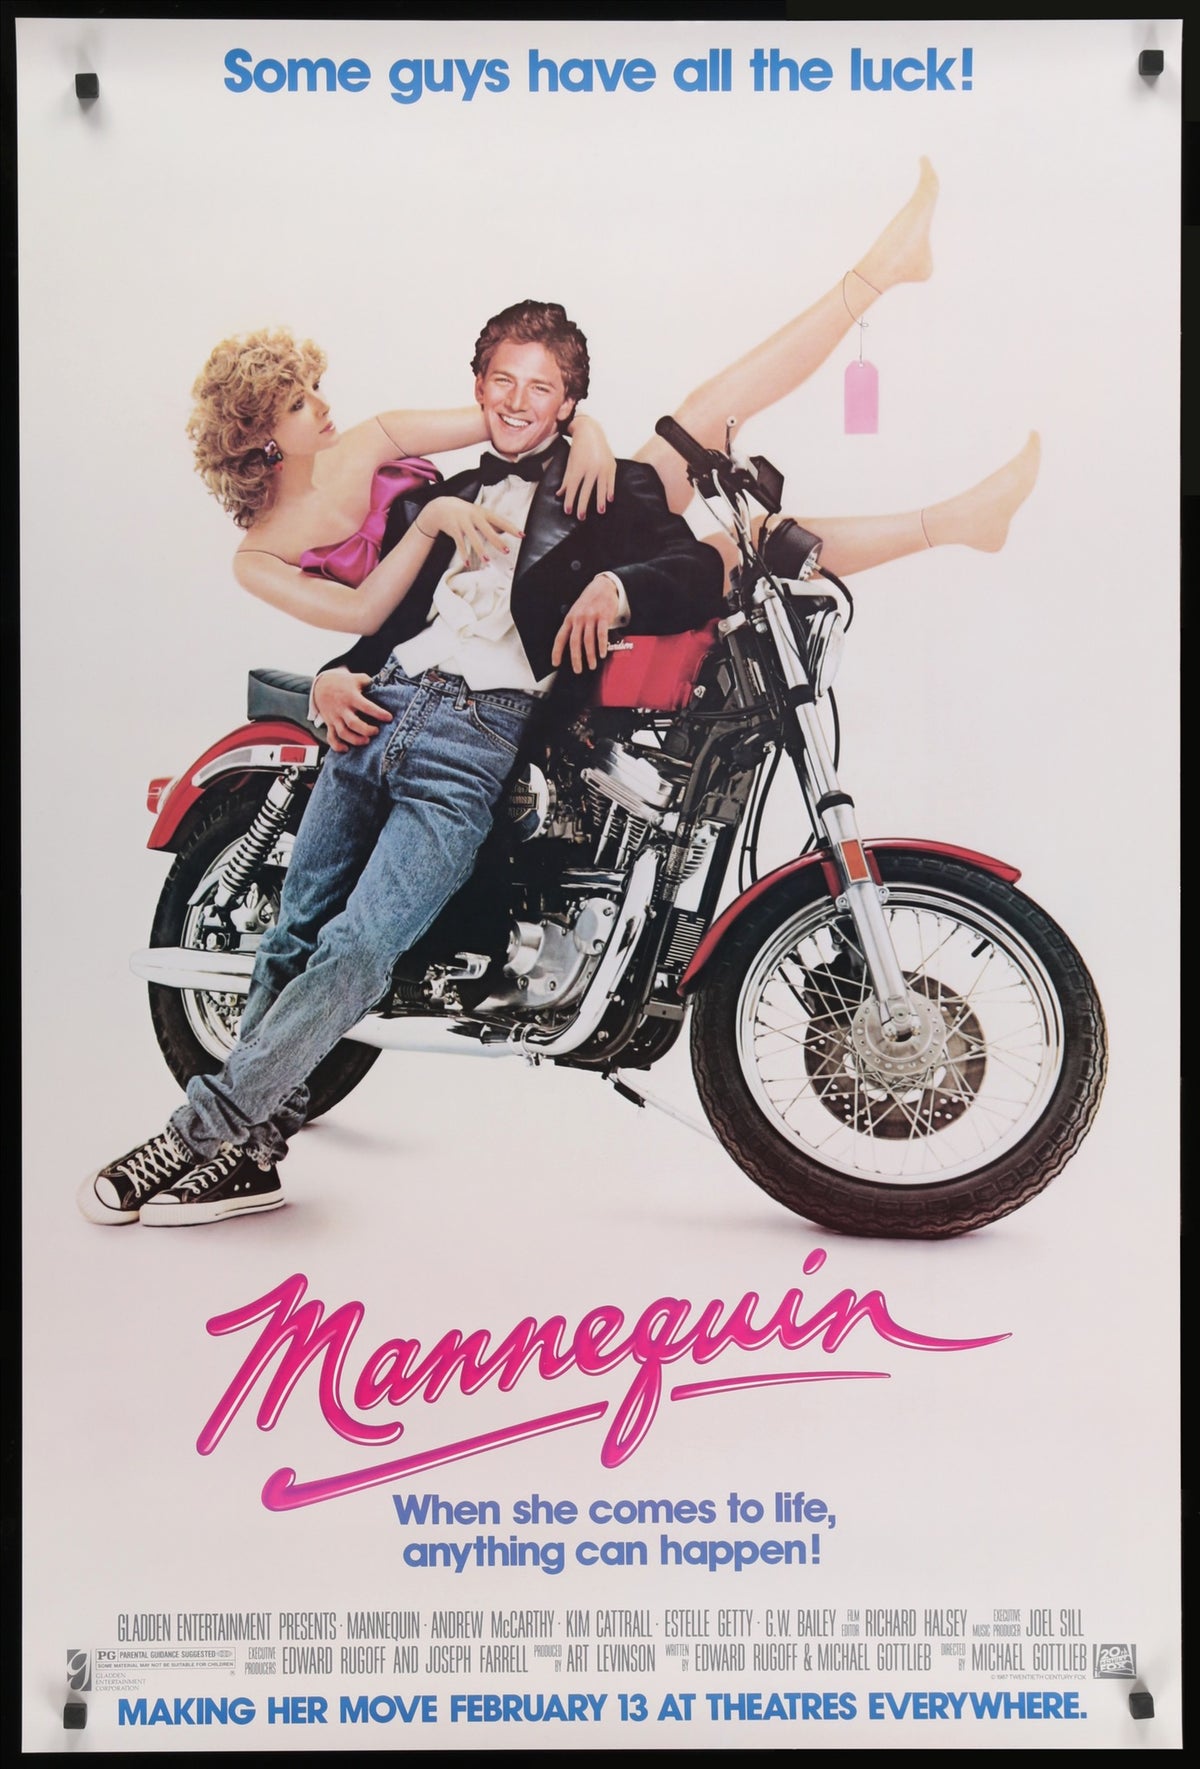 Mannequin (1987) original movie poster for sale at Original Film Art